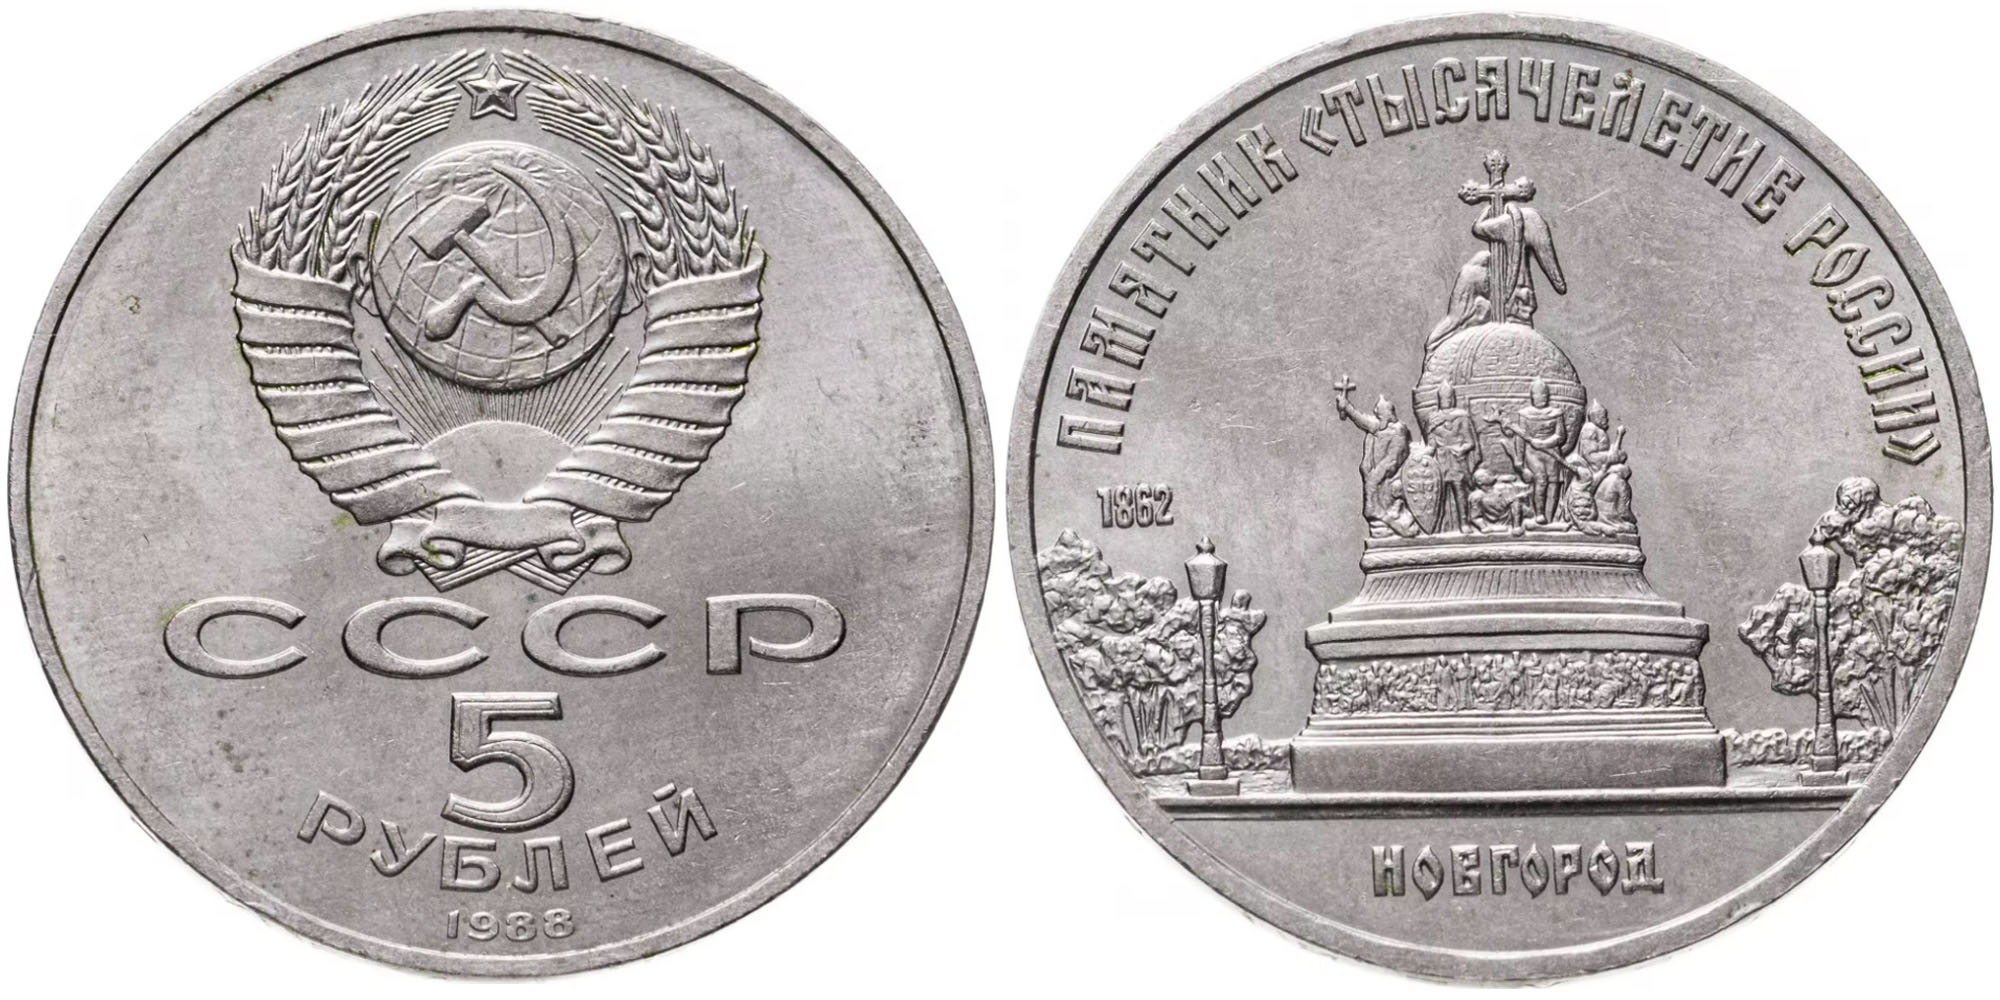 5 рублей 1988 СССР — Памятная монета с изображением памятника Тысячелетие России в Новгороде